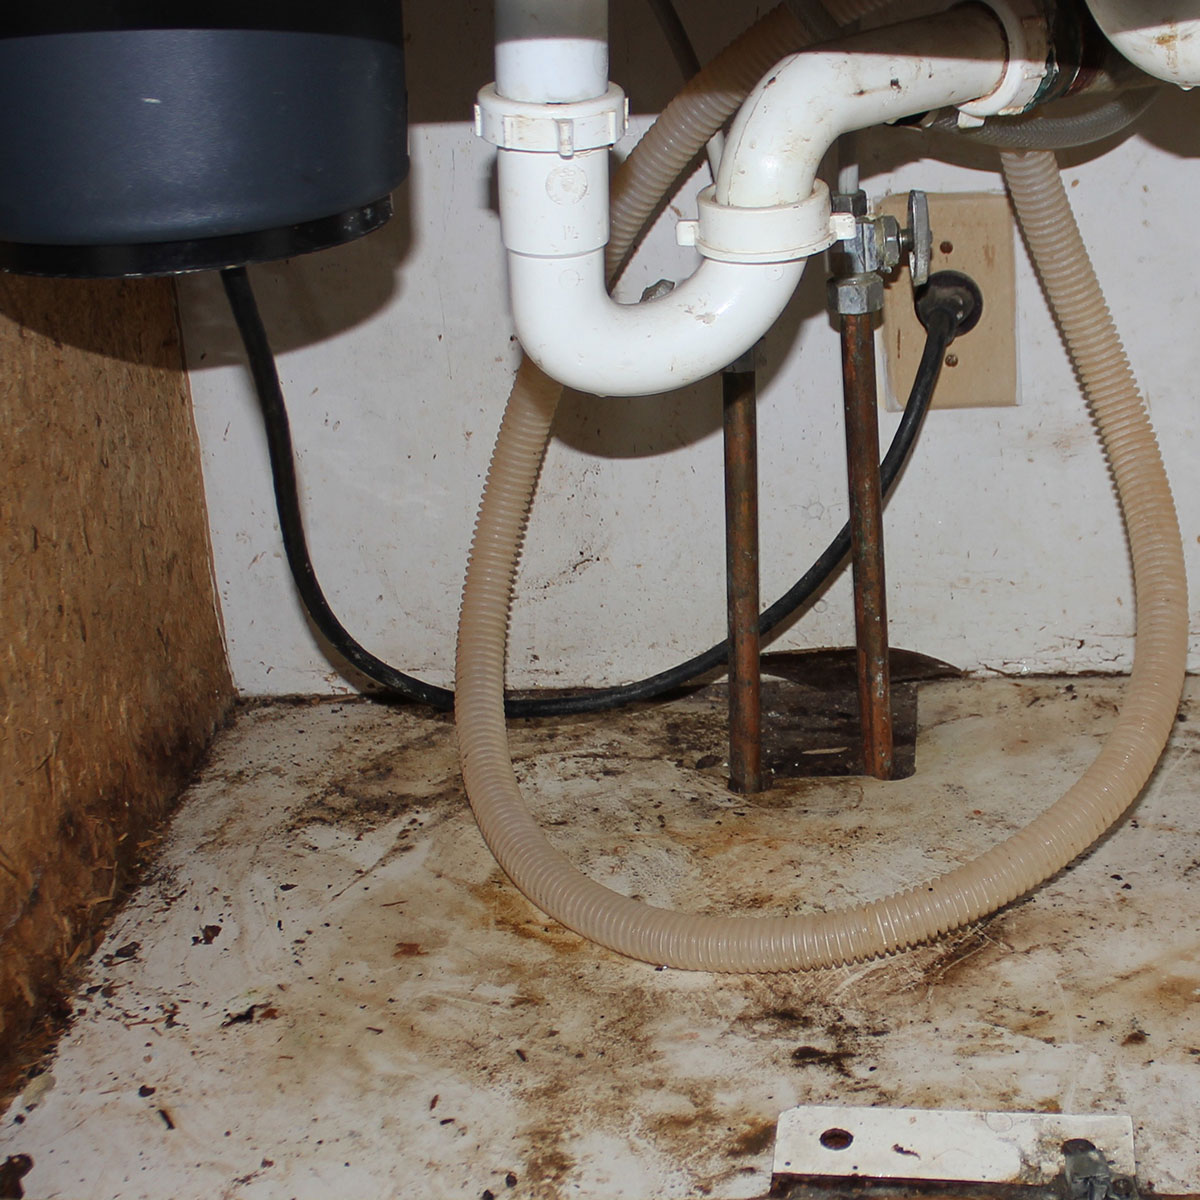 Mold underneath a kitchen sink